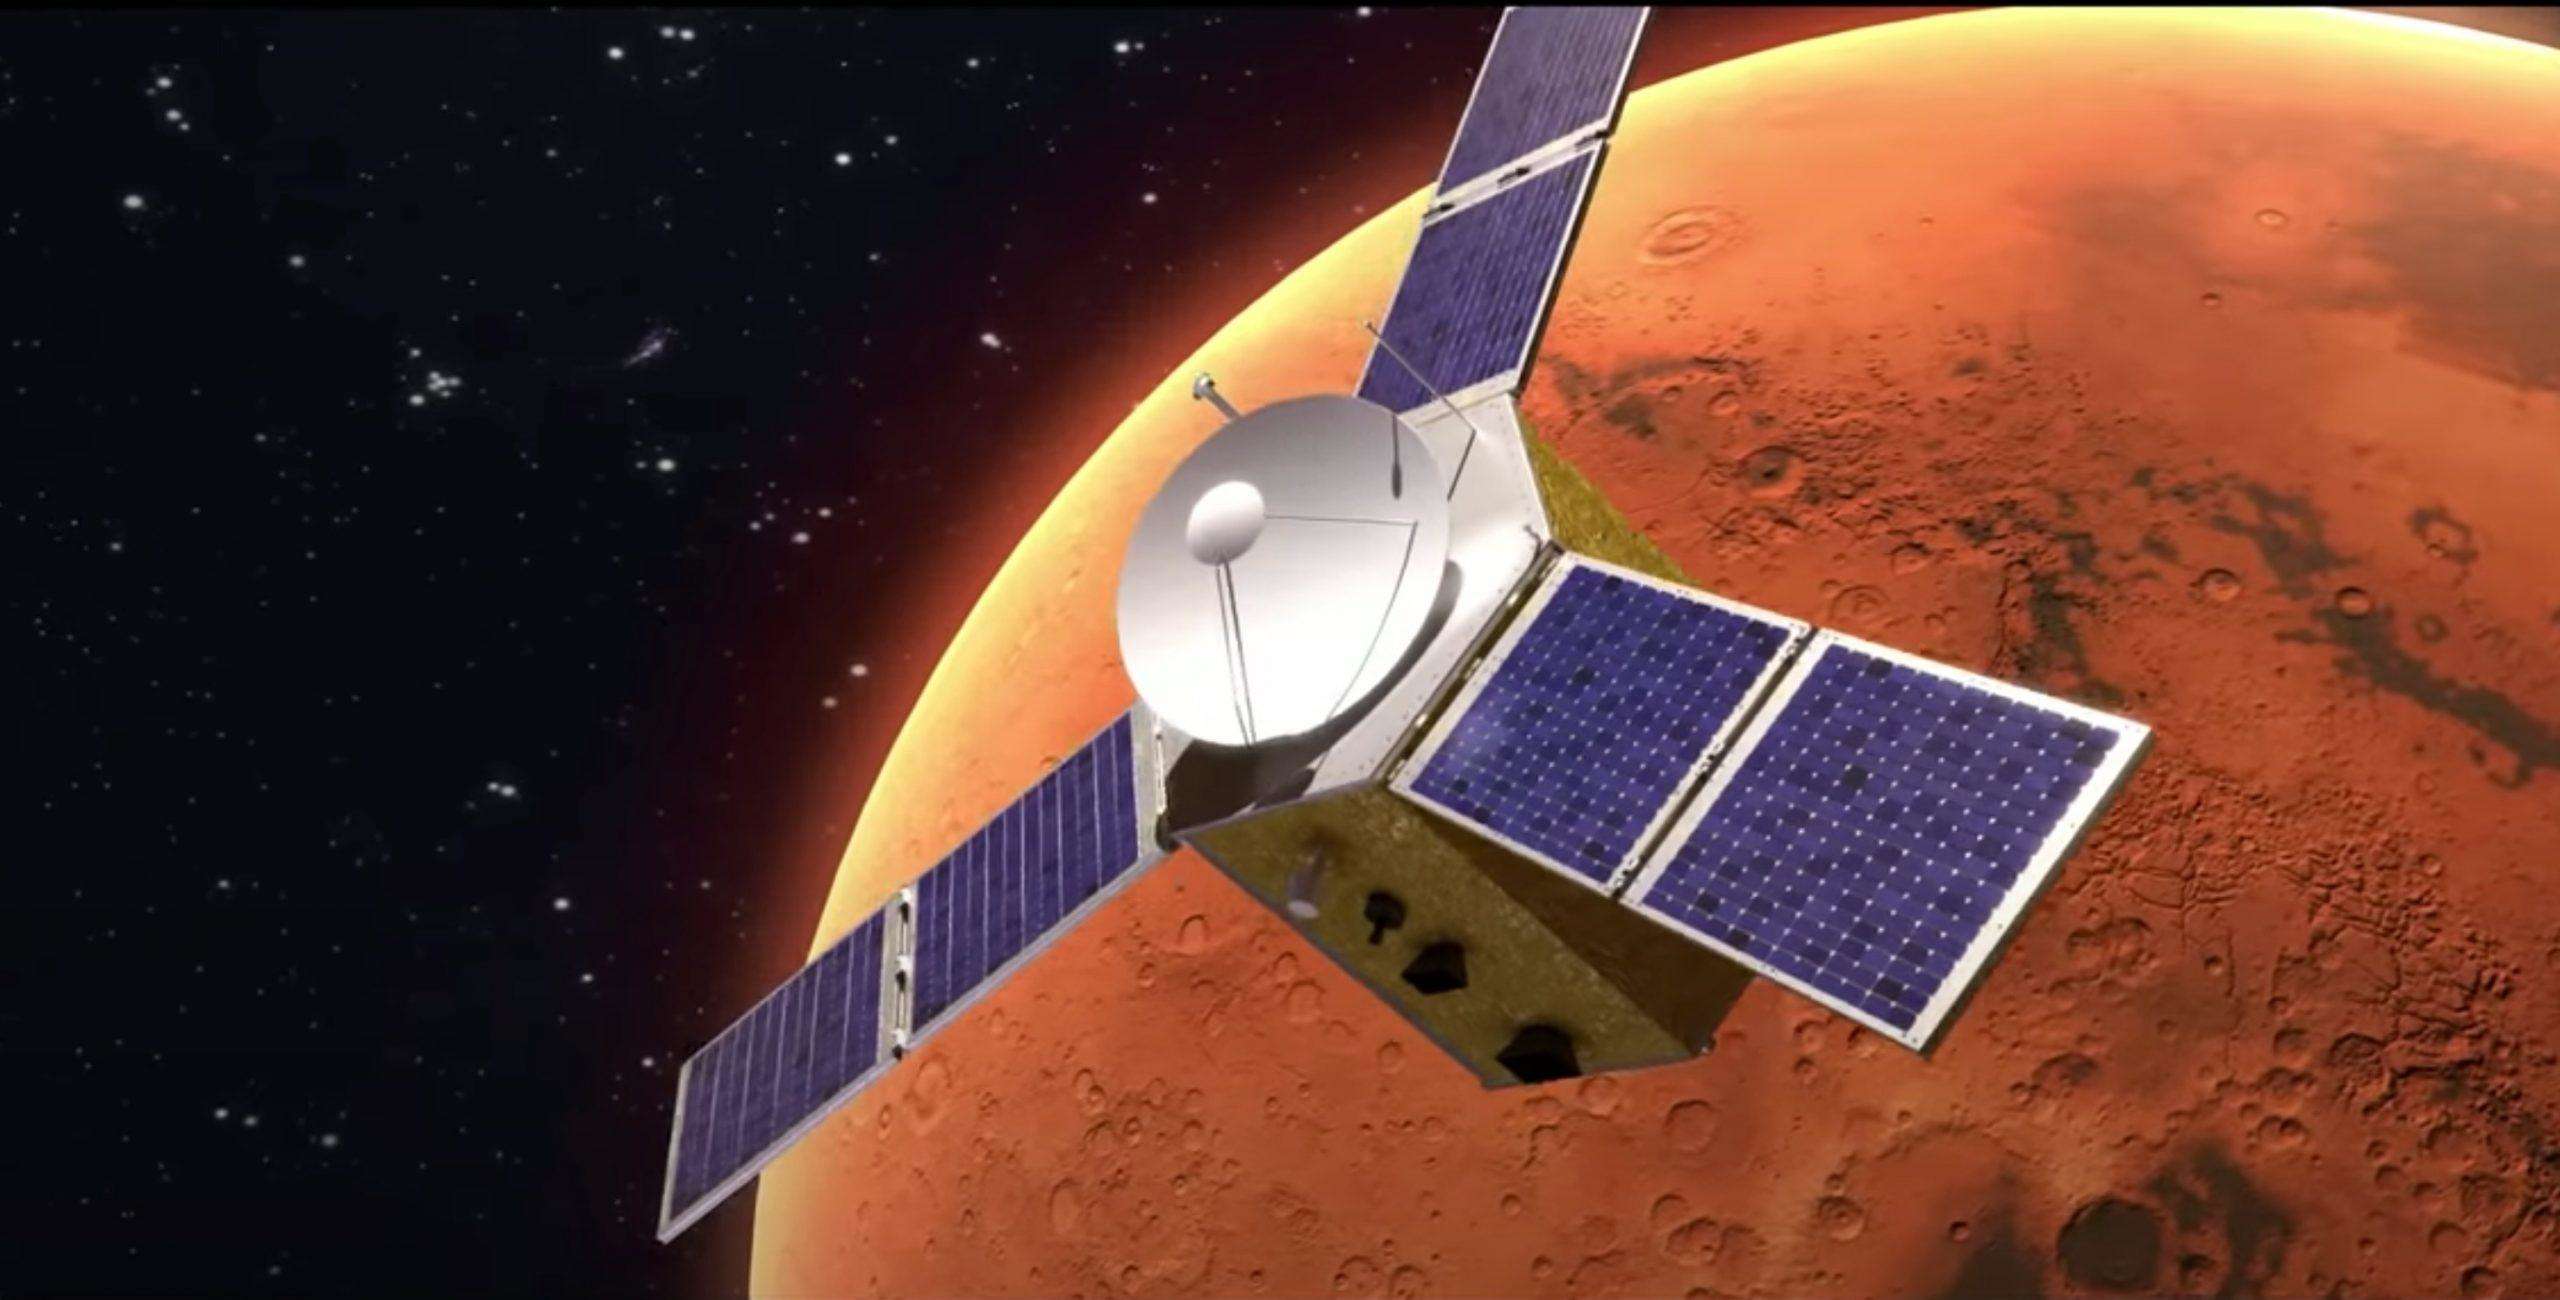 यूएई मंगल ग्रह पर भेजेगा अपना यान, ऐसा करने वाला बनेगा पहला अरब देश